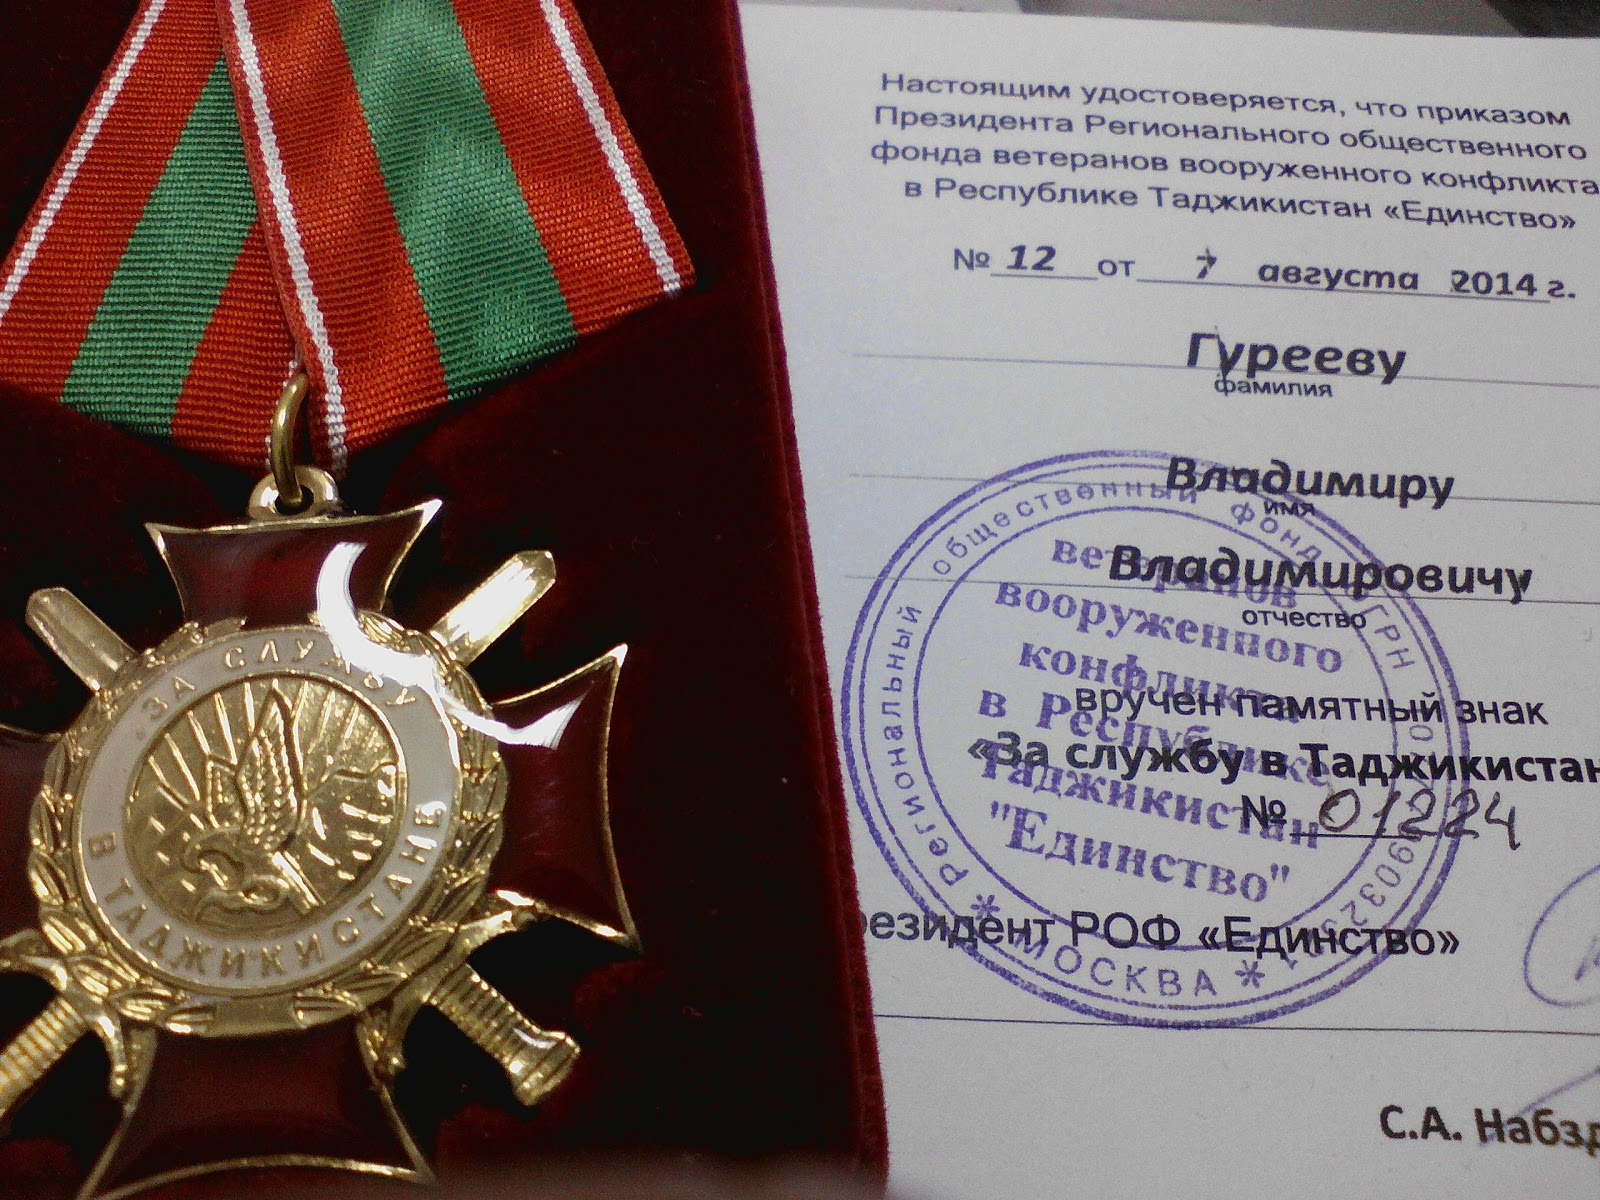 Фонд участников боевых действий. Медаль за службу в Таджикистане. Орден за службу в Таджикистане. Награды за службу в Таджикистане. Знак за службу в Таджикистане.